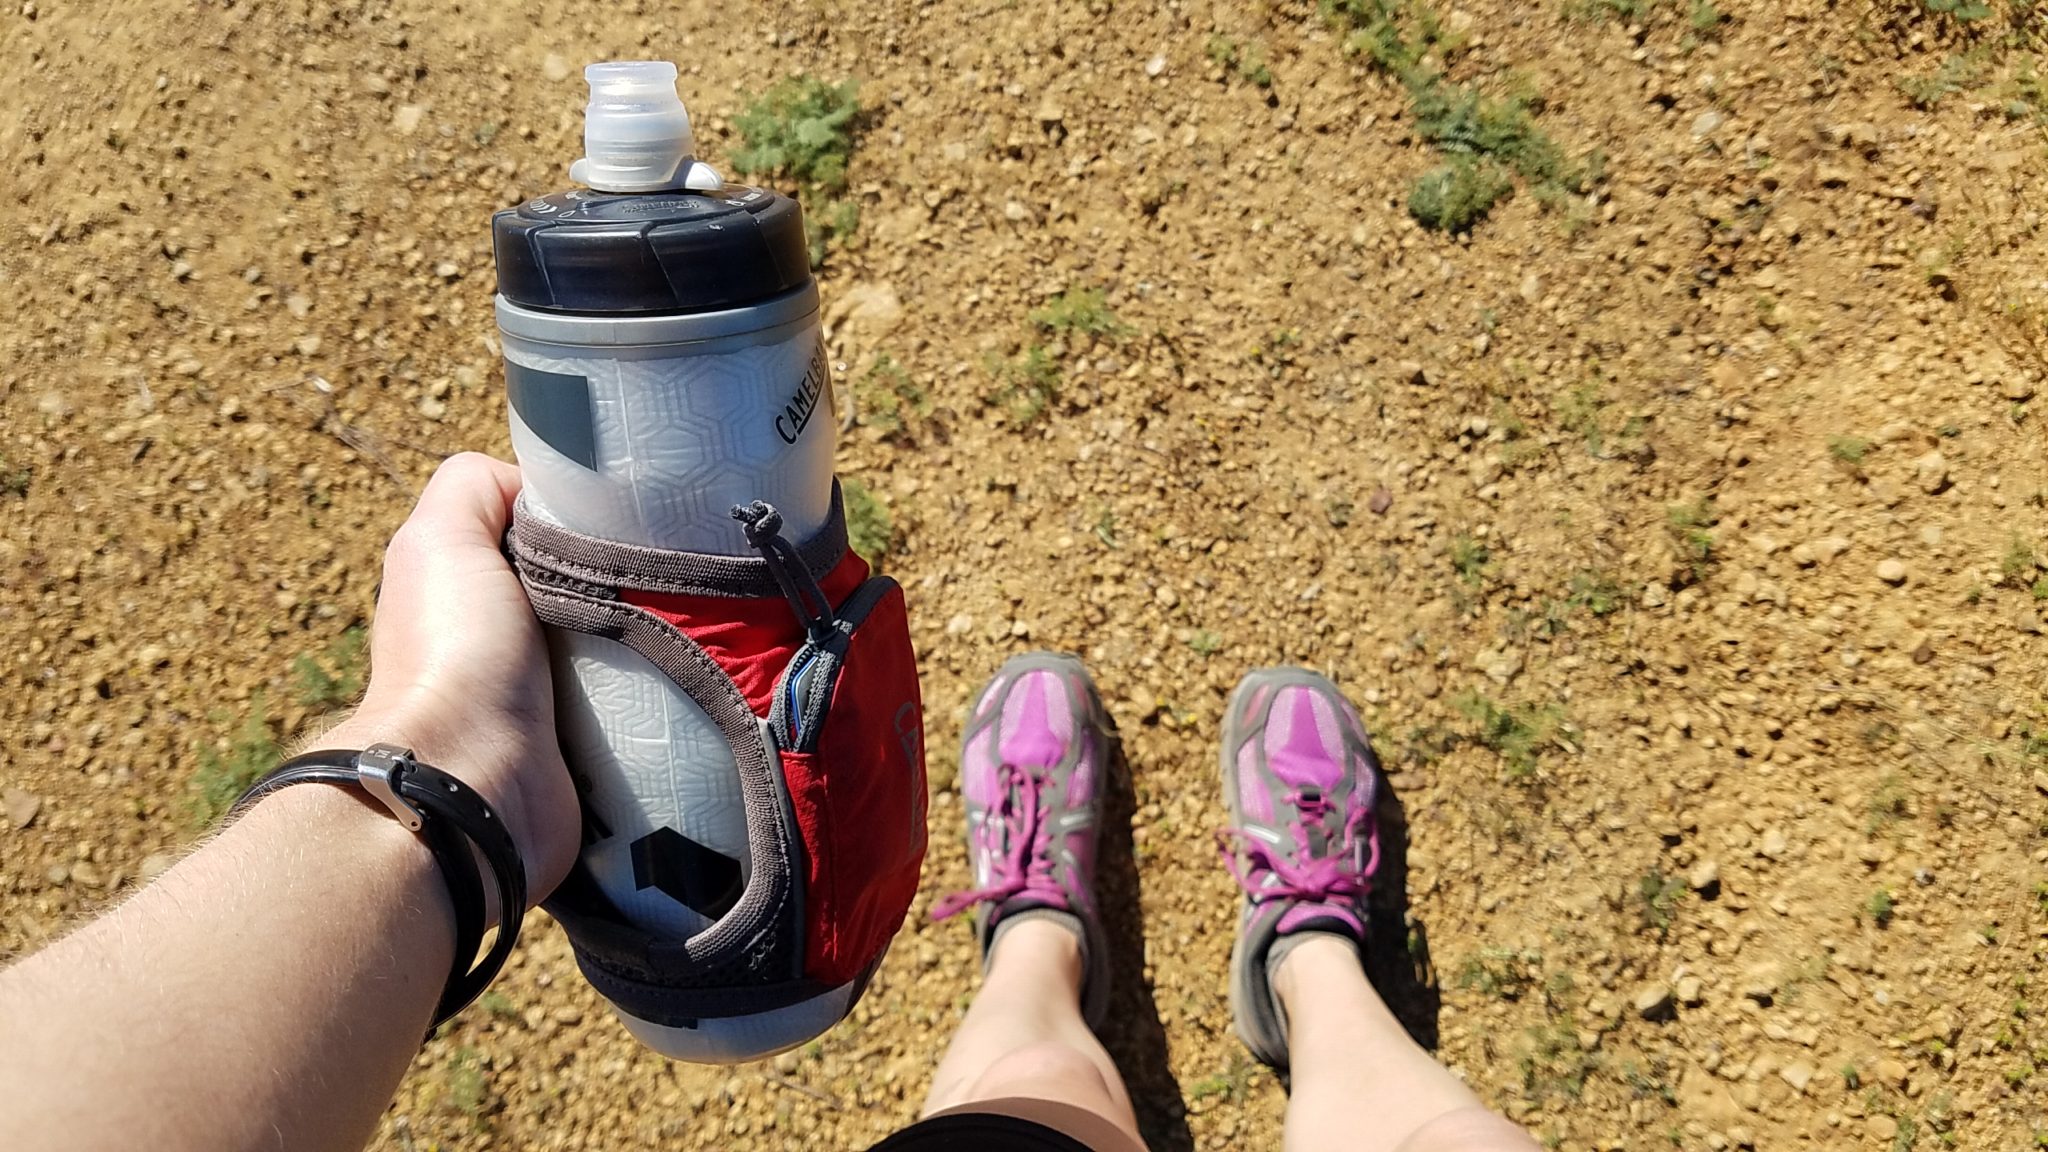 Nathan SpeedShot Plus 12oz Water Bottle - Hike & Camp